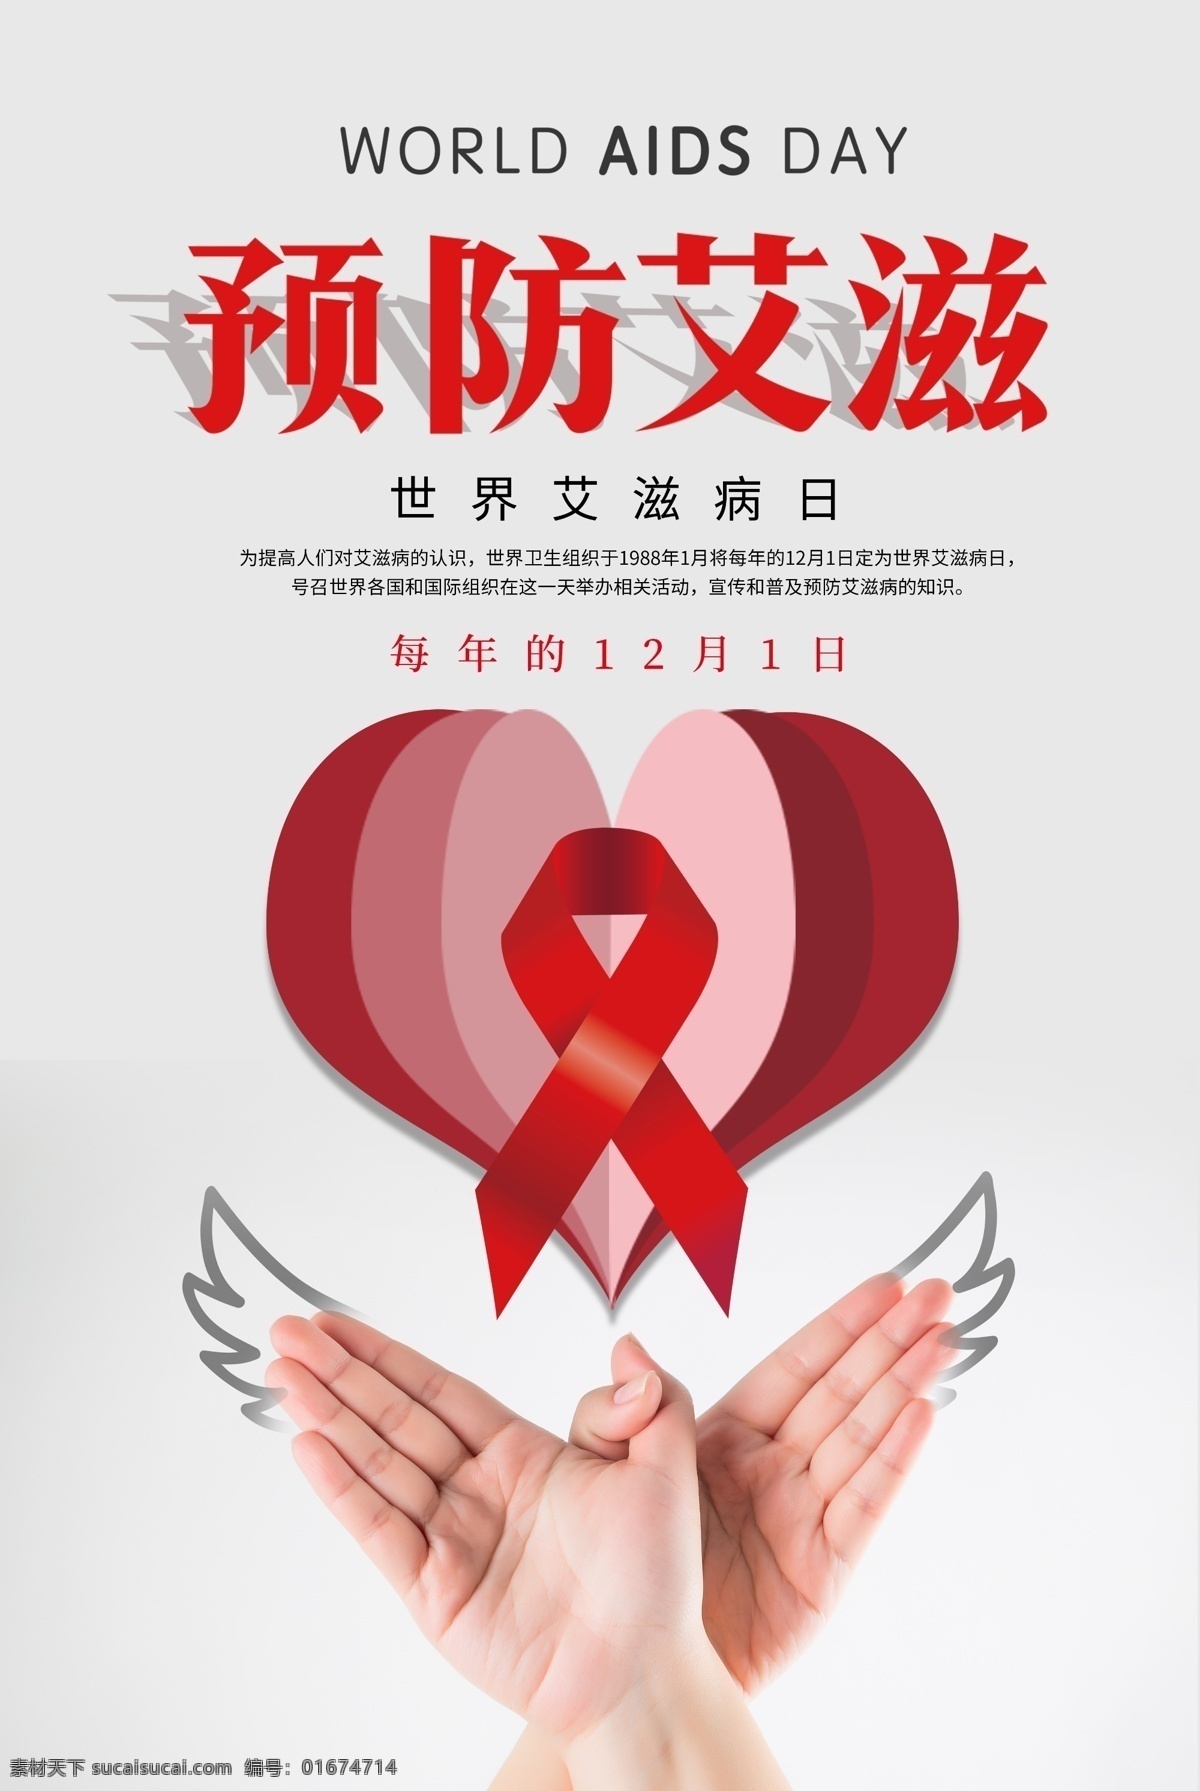 简洁 折纸 预防 艾滋 海报 艾滋病宣传日 世界艾滋病日 预防艾滋 关注艾滋 折纸风格 公益海报 防艾 红丝带